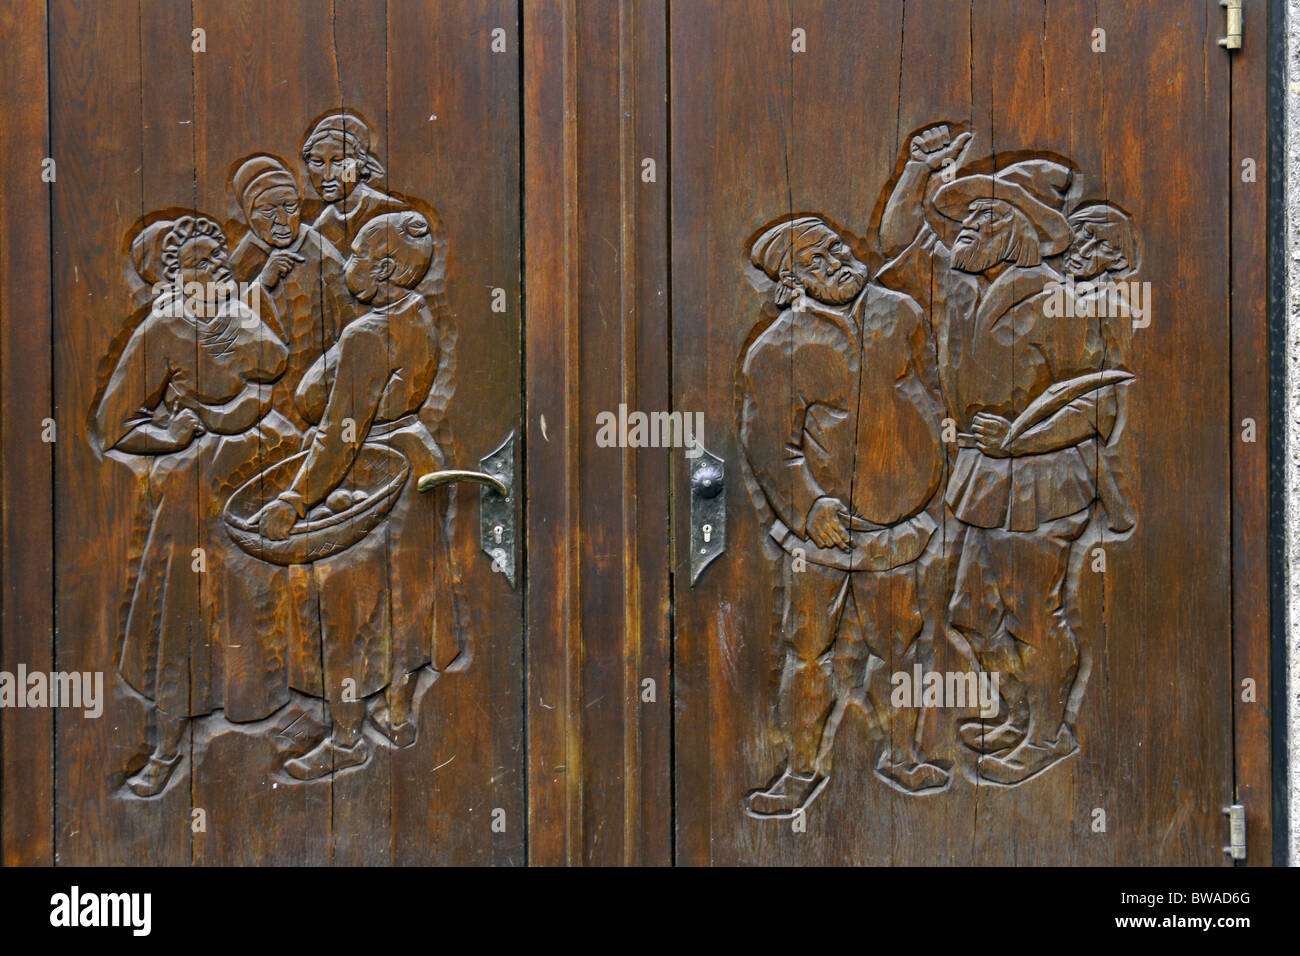 La vieille ville de Salzbourg Autriche sculpté en bois Portes de garage détail Banque D'Images